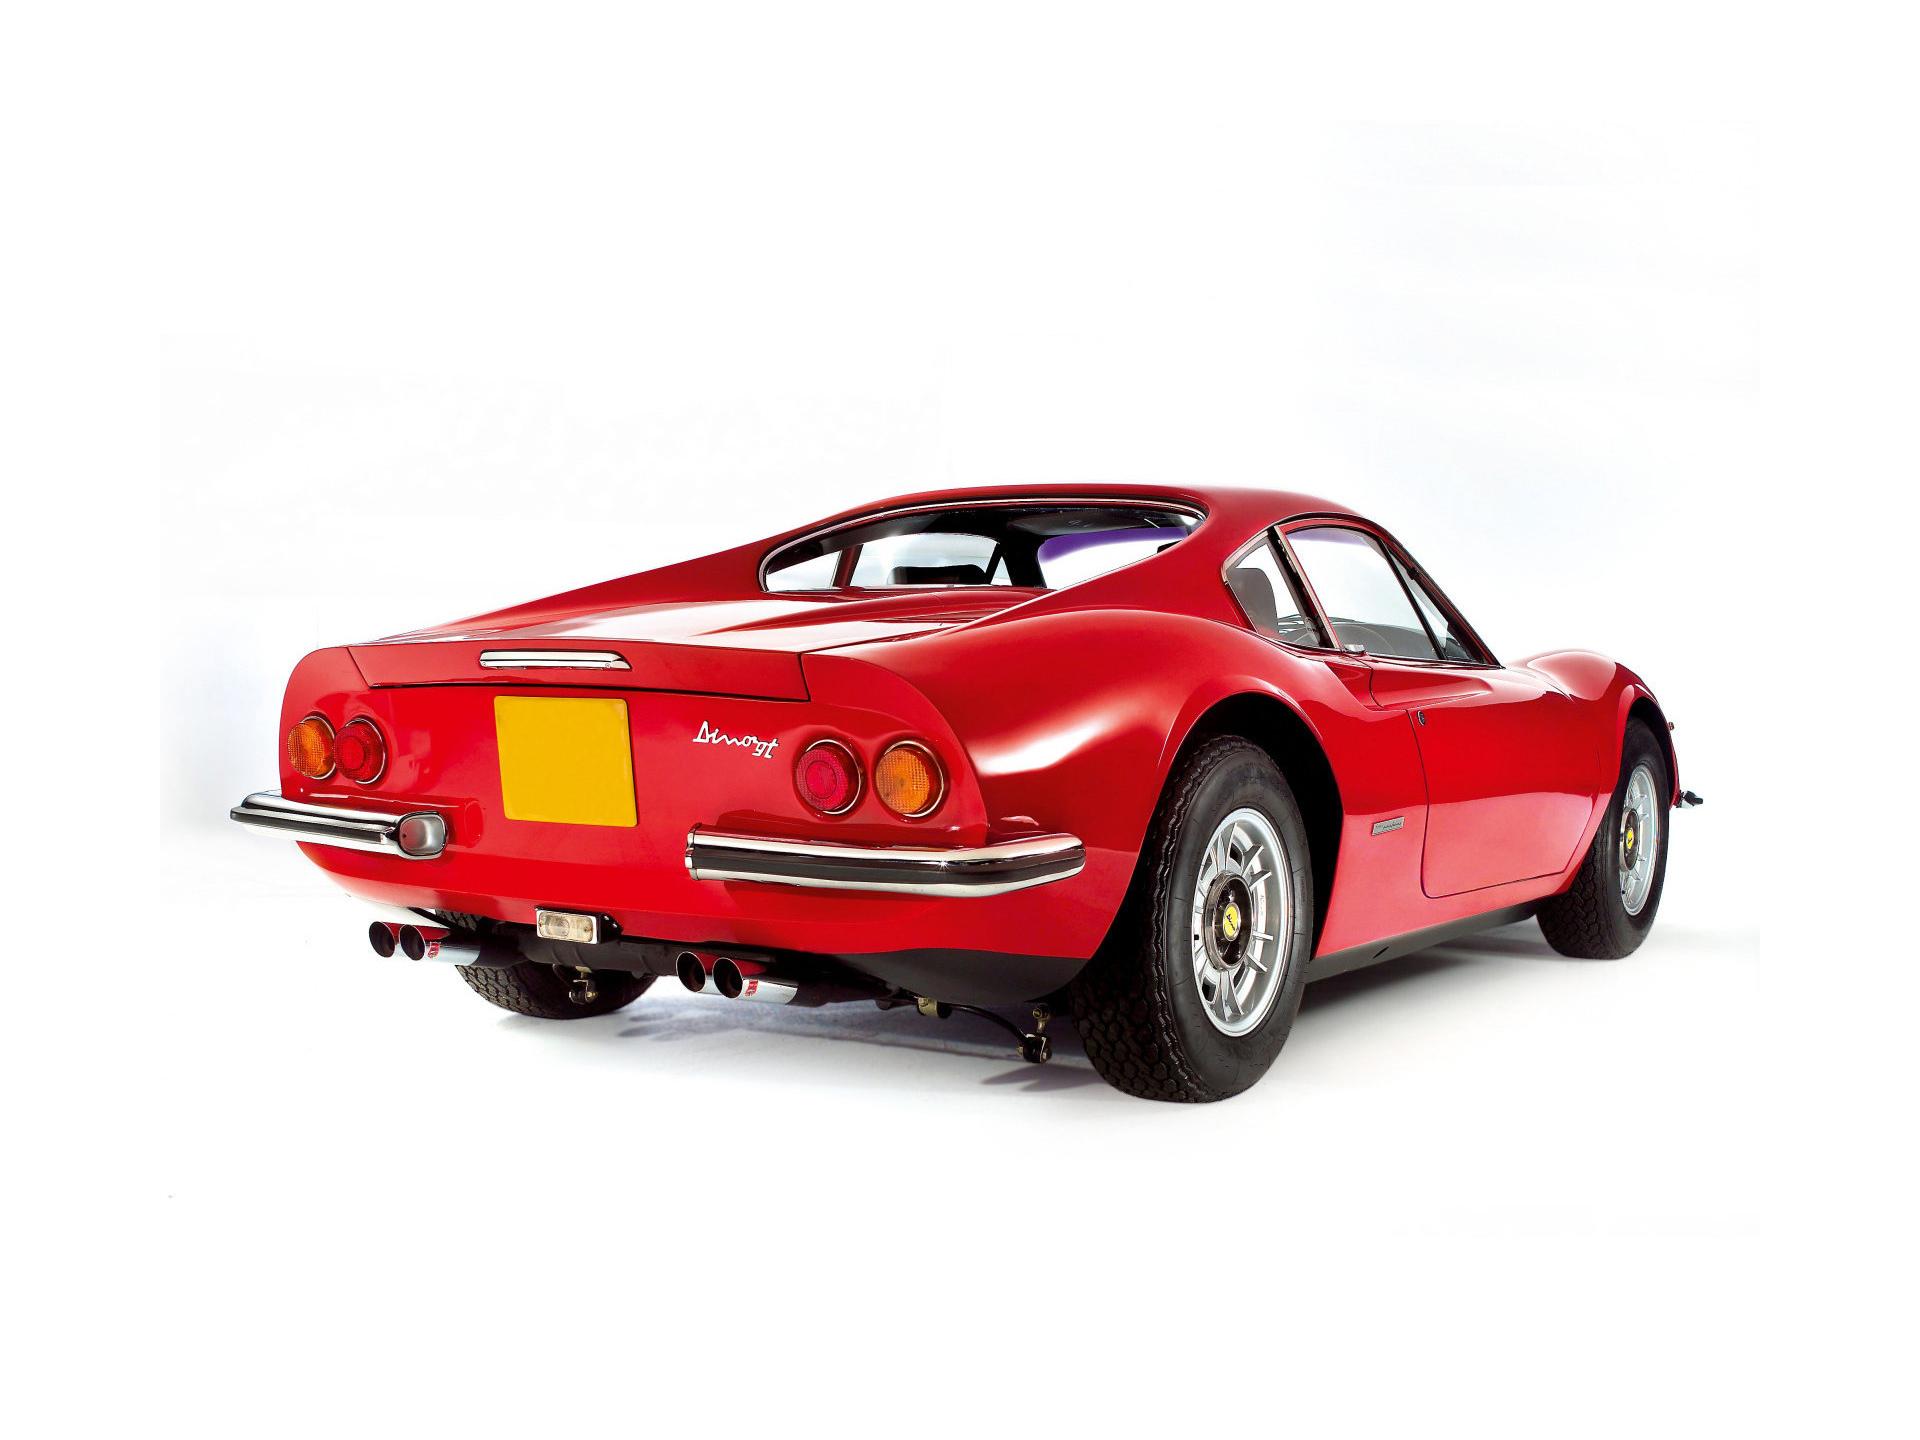 Ferrari Dino 246 GT at 1024 x 1024 iPad size wallpapers HD quality